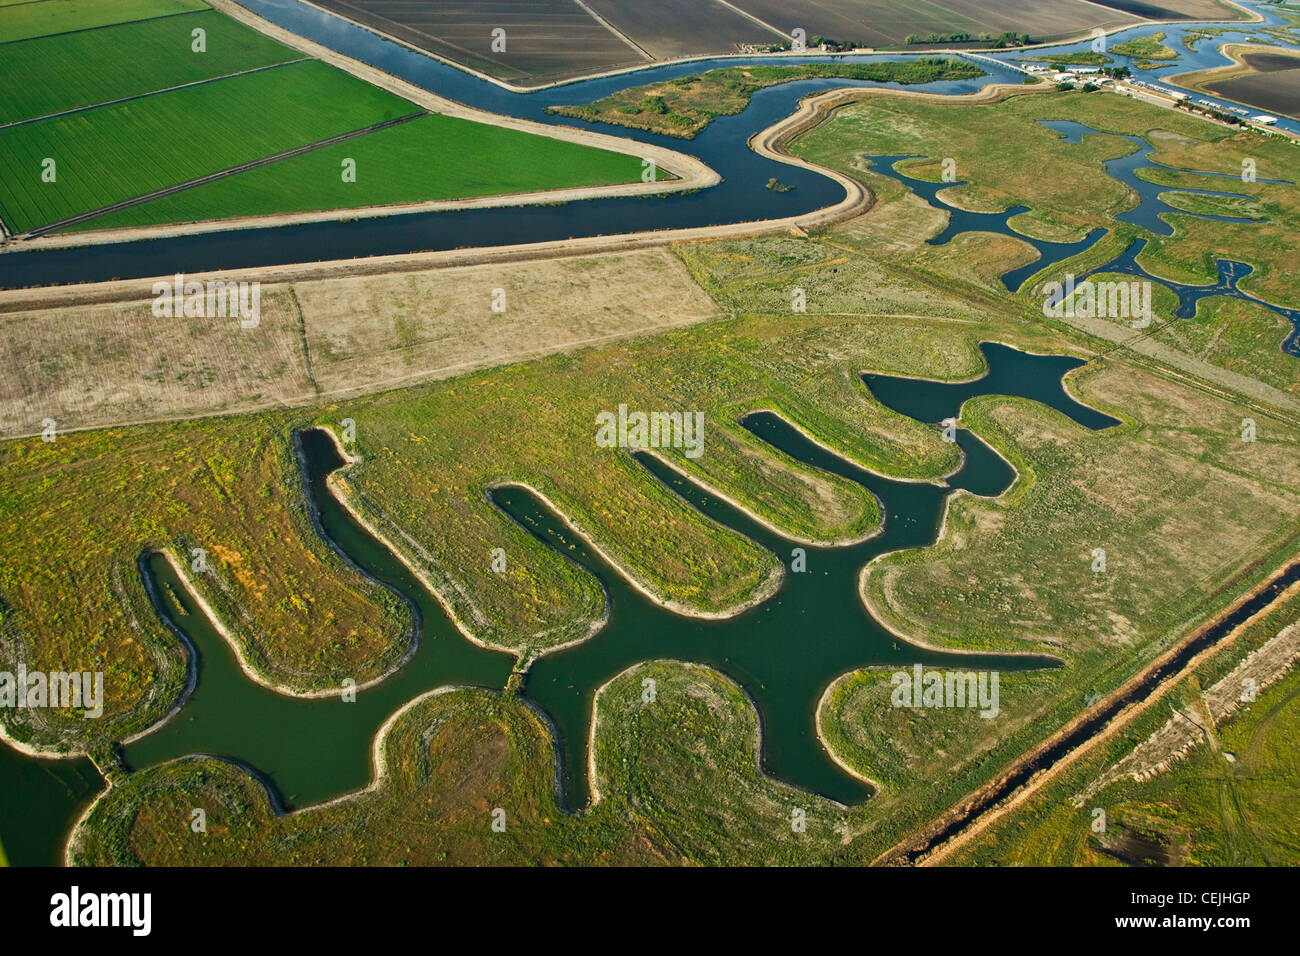 Vue aérienne des terres agricoles, à la fois cultivée et la jachère, et des cours d'eau dans le delta du fleuve Sacramento-San Joaquin / Californie. Banque D'Images